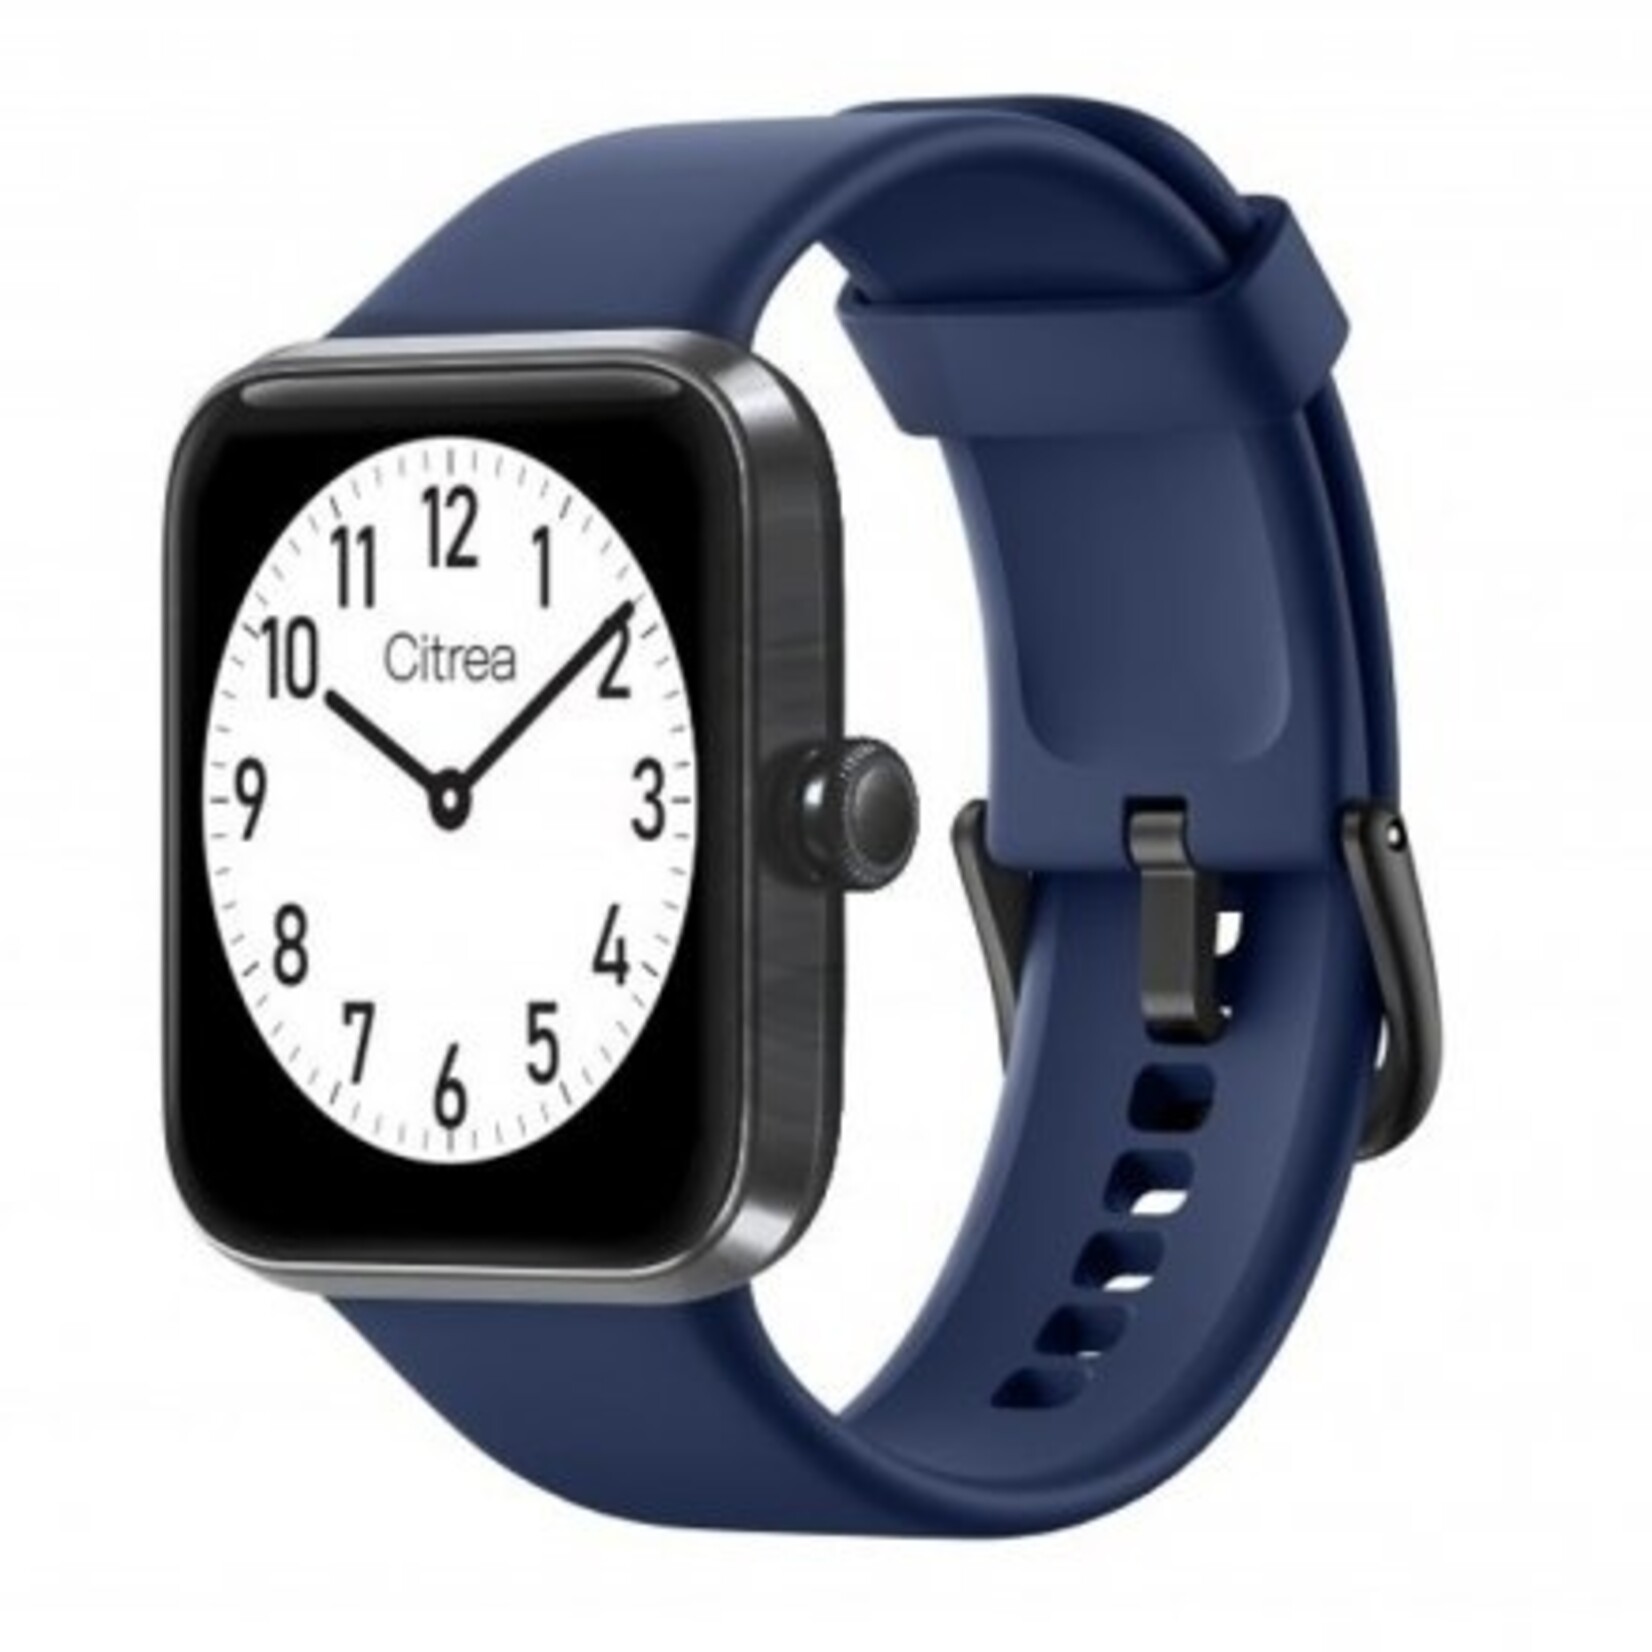 Citrea Coolwatch citrea smartwatch x01a-002 blue v2.0